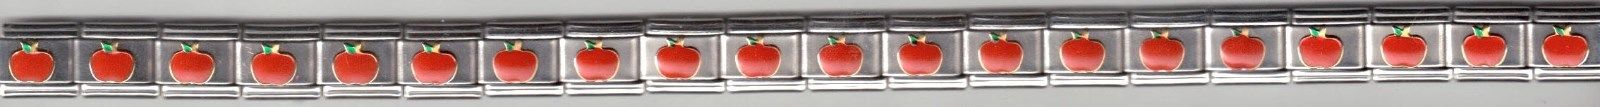 Red Apple Handmade Italian charm Starter Bracelet 9mm 20 links - $36.75